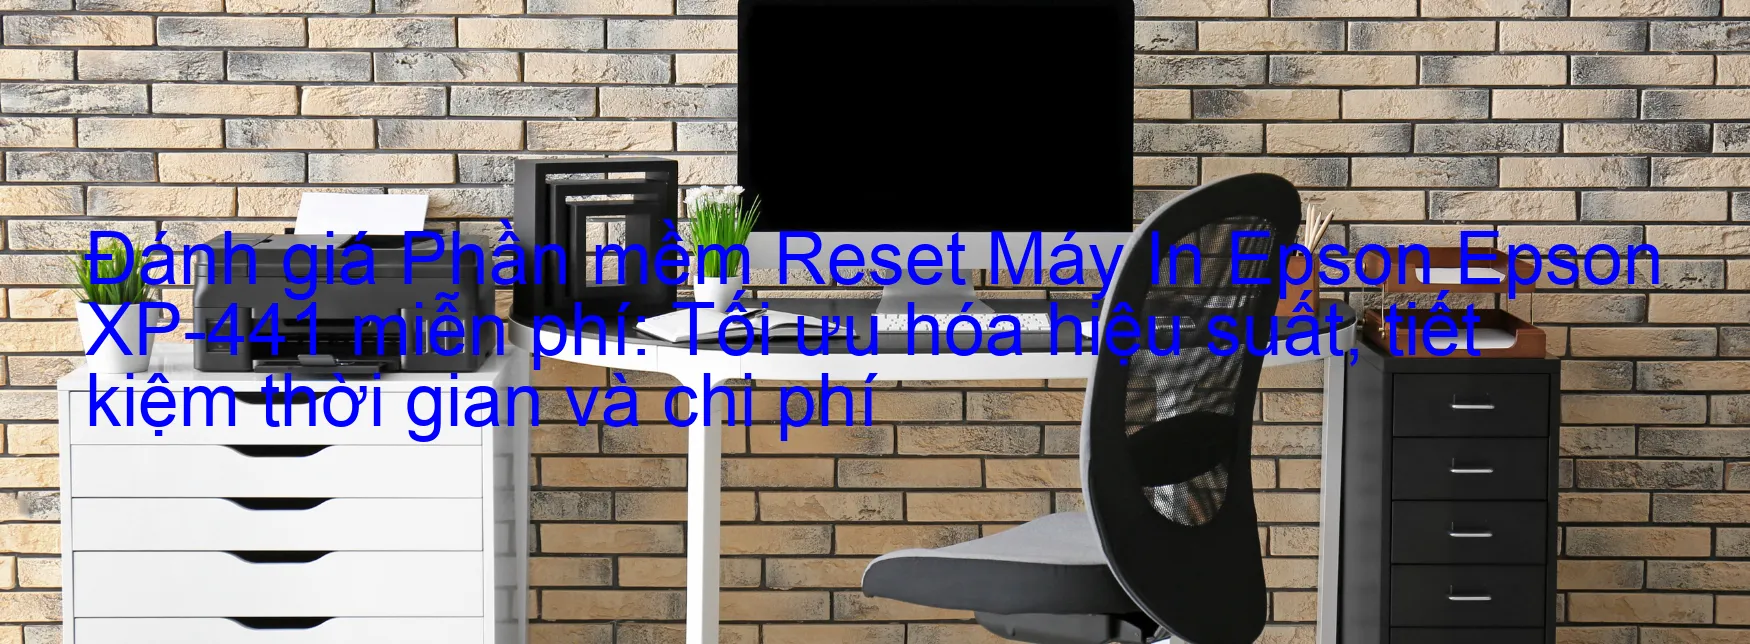 Đánh Giá phần mềm Reset Epson XP-441 Miễn Phí